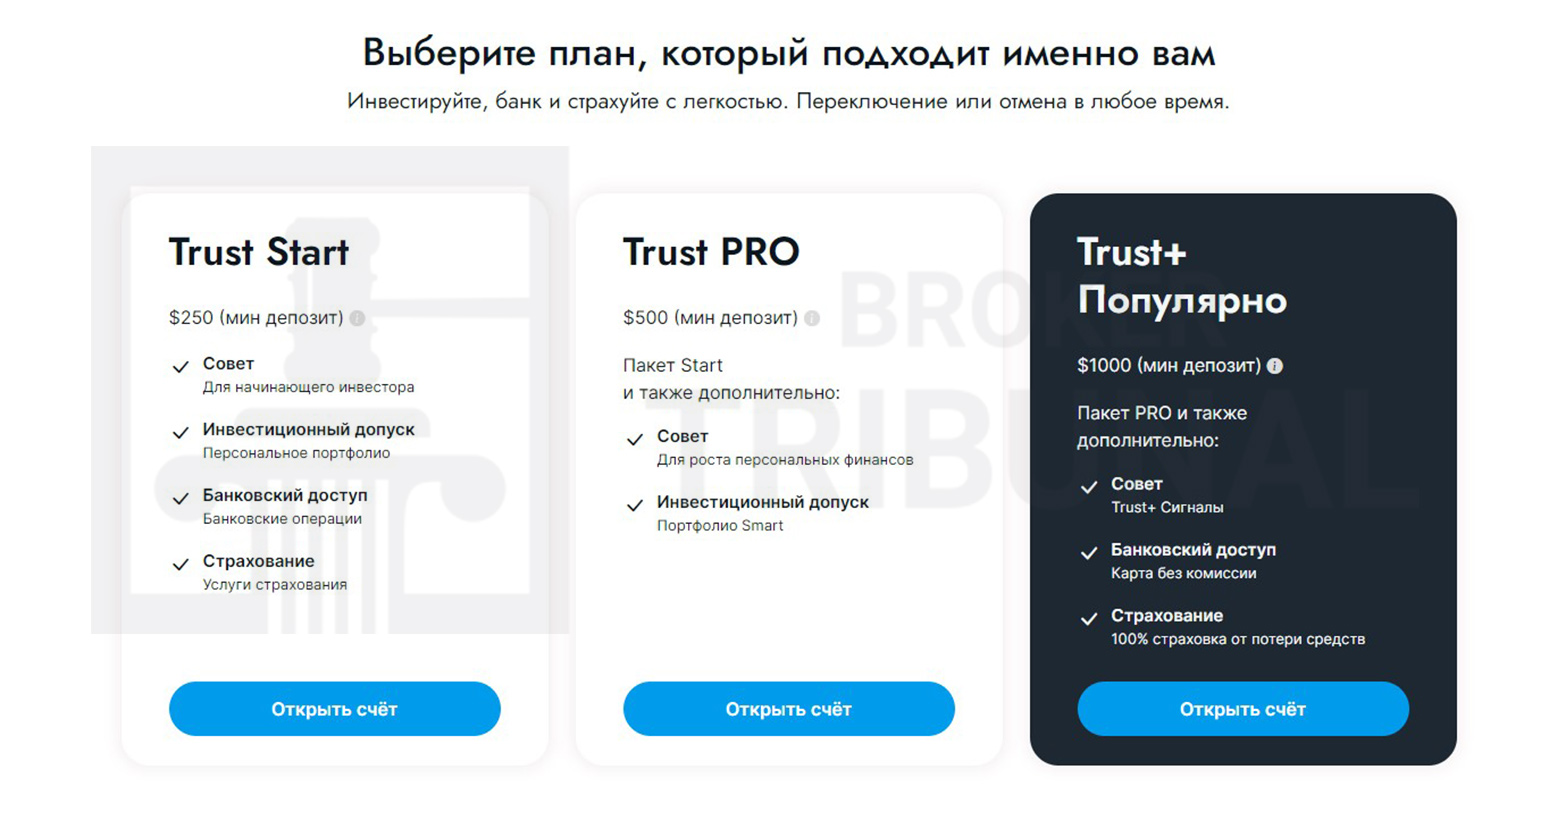 Trust Blue Ltd